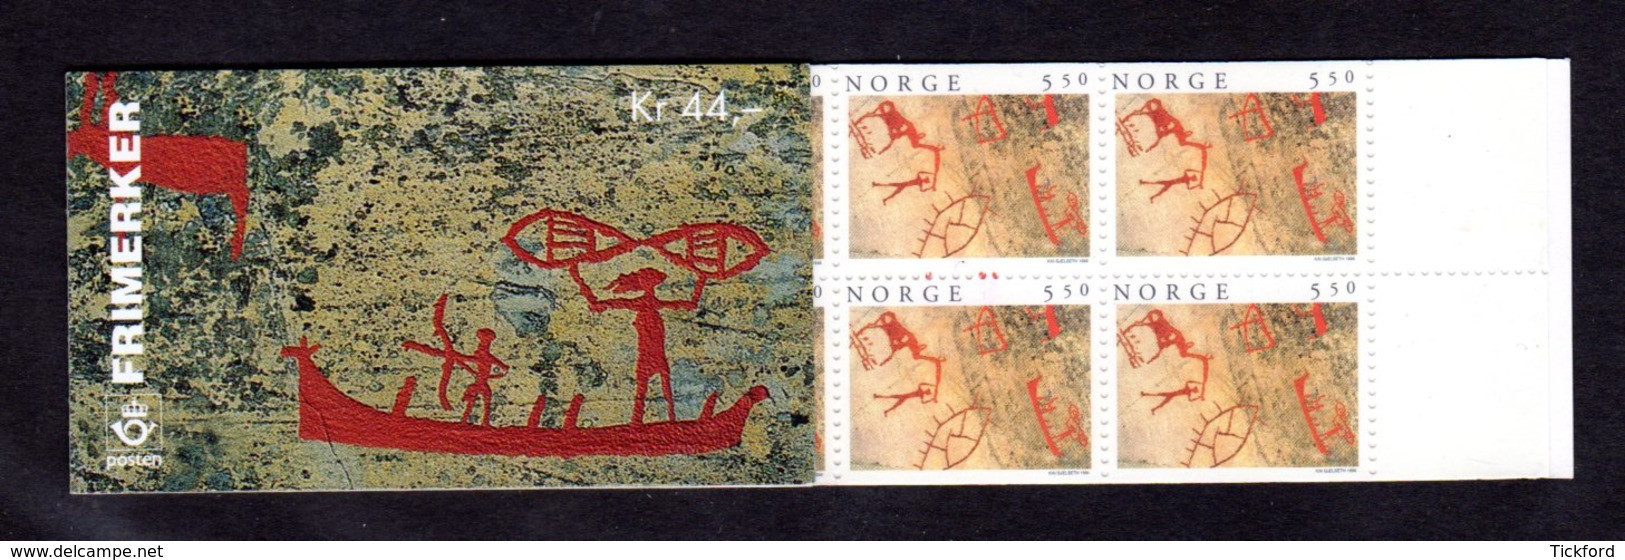 NORVEGE 1996 - CARNET Yvert C1165 - Facit H92 - NEUF** MNH - Tourisme, Peintures Rupestres D'Alta - Postzegelboekjes